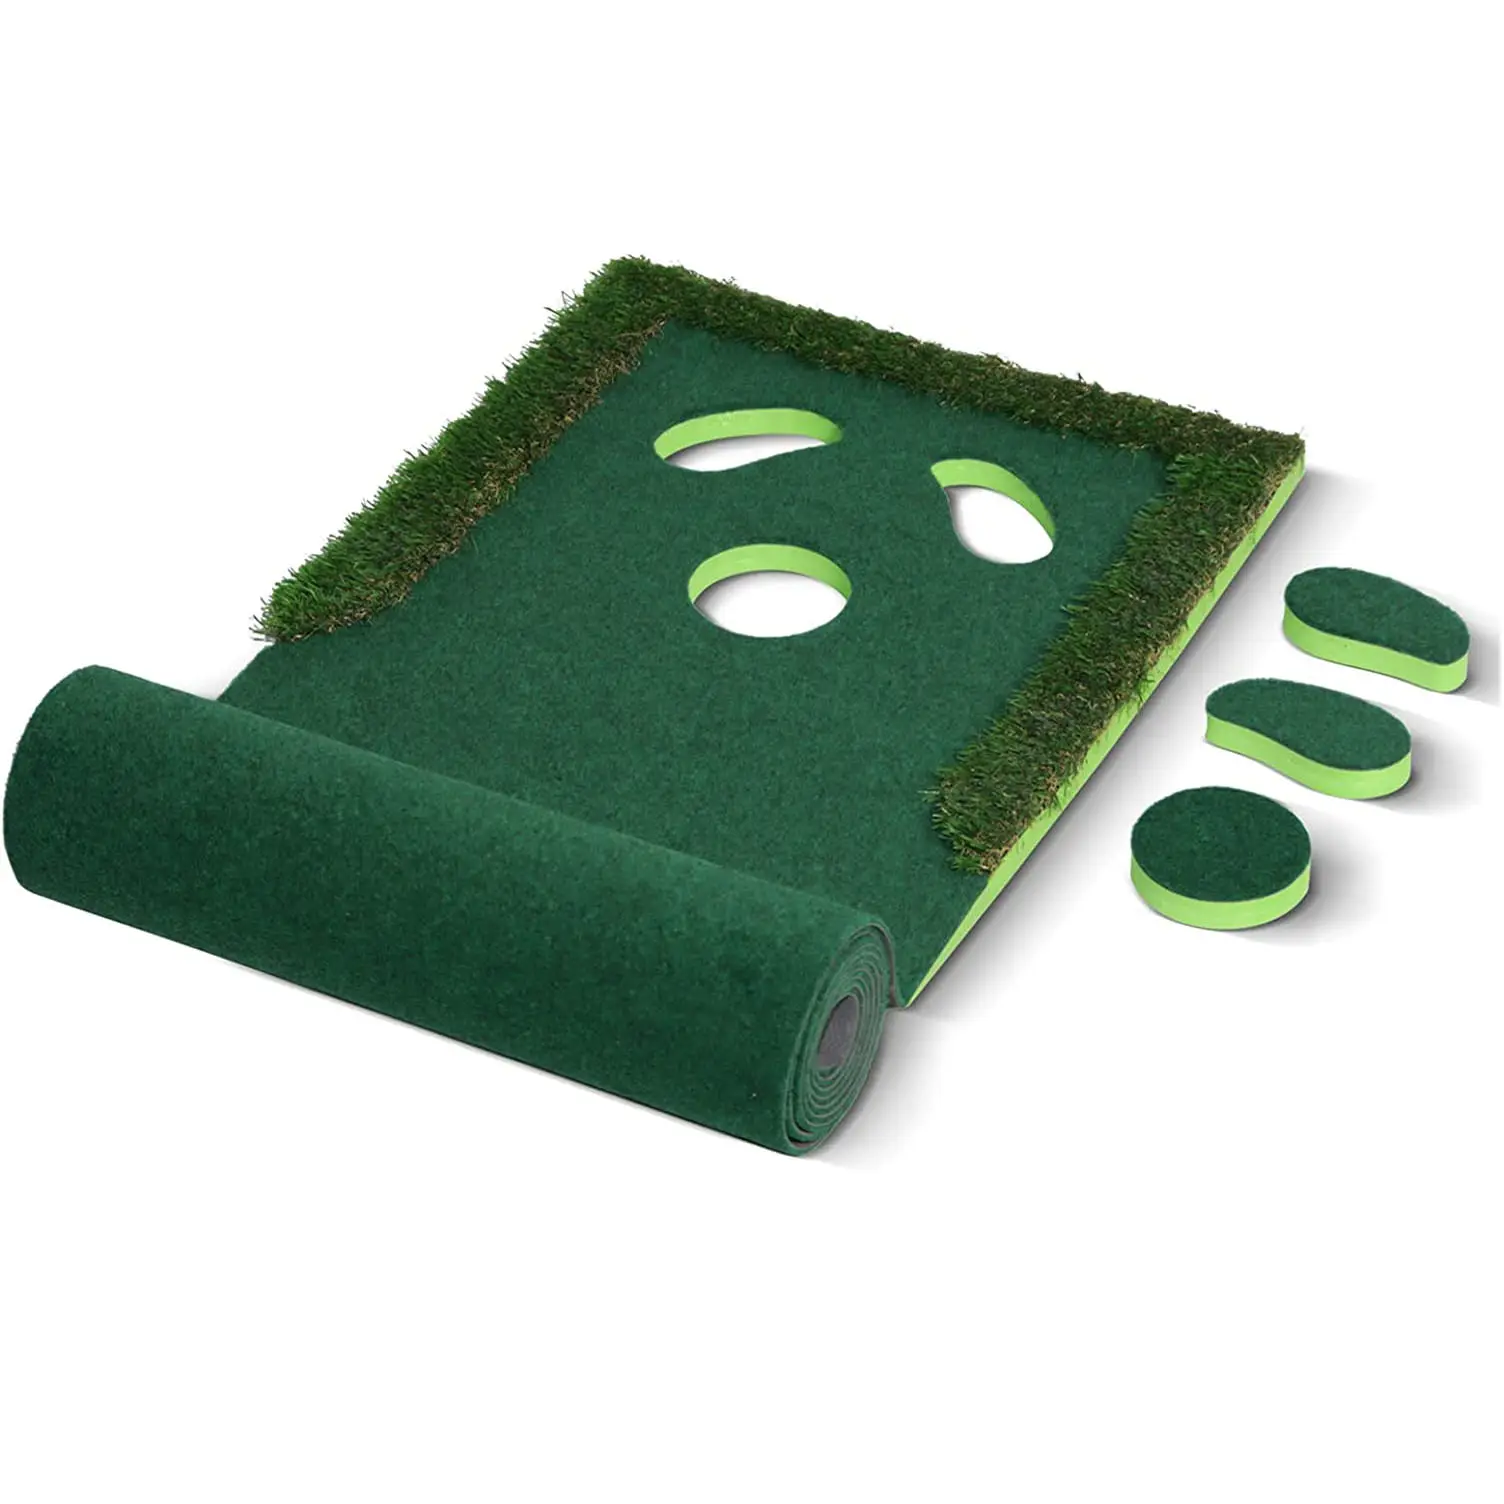 골프장 훈련을위한 녹색 매트 연습 장비 퍼팅 실내/실외 골프장 훈련 보조